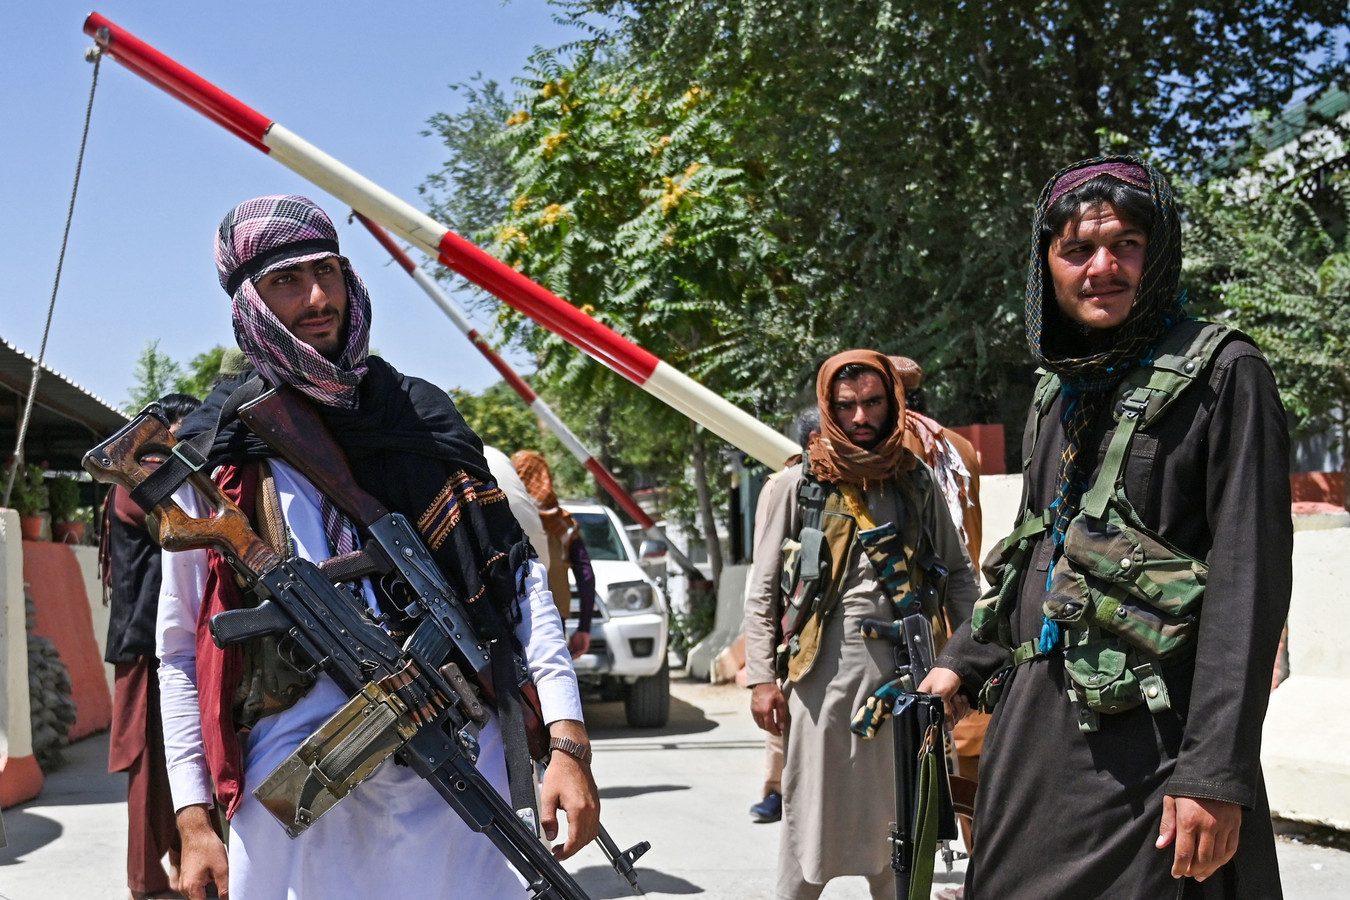 Des combattants talibans montent la garde au bord d'une route près de la place Zanbaq à Kaboul, le 16 août 2021, après une fin étonnamment rapide de la guerre de 20 ans en Afghanistan, alors que des milliers de personnes ont envahi l'aéroport de la ville pour tenter de fuir le régime islamiste dur et redouté du groupe.